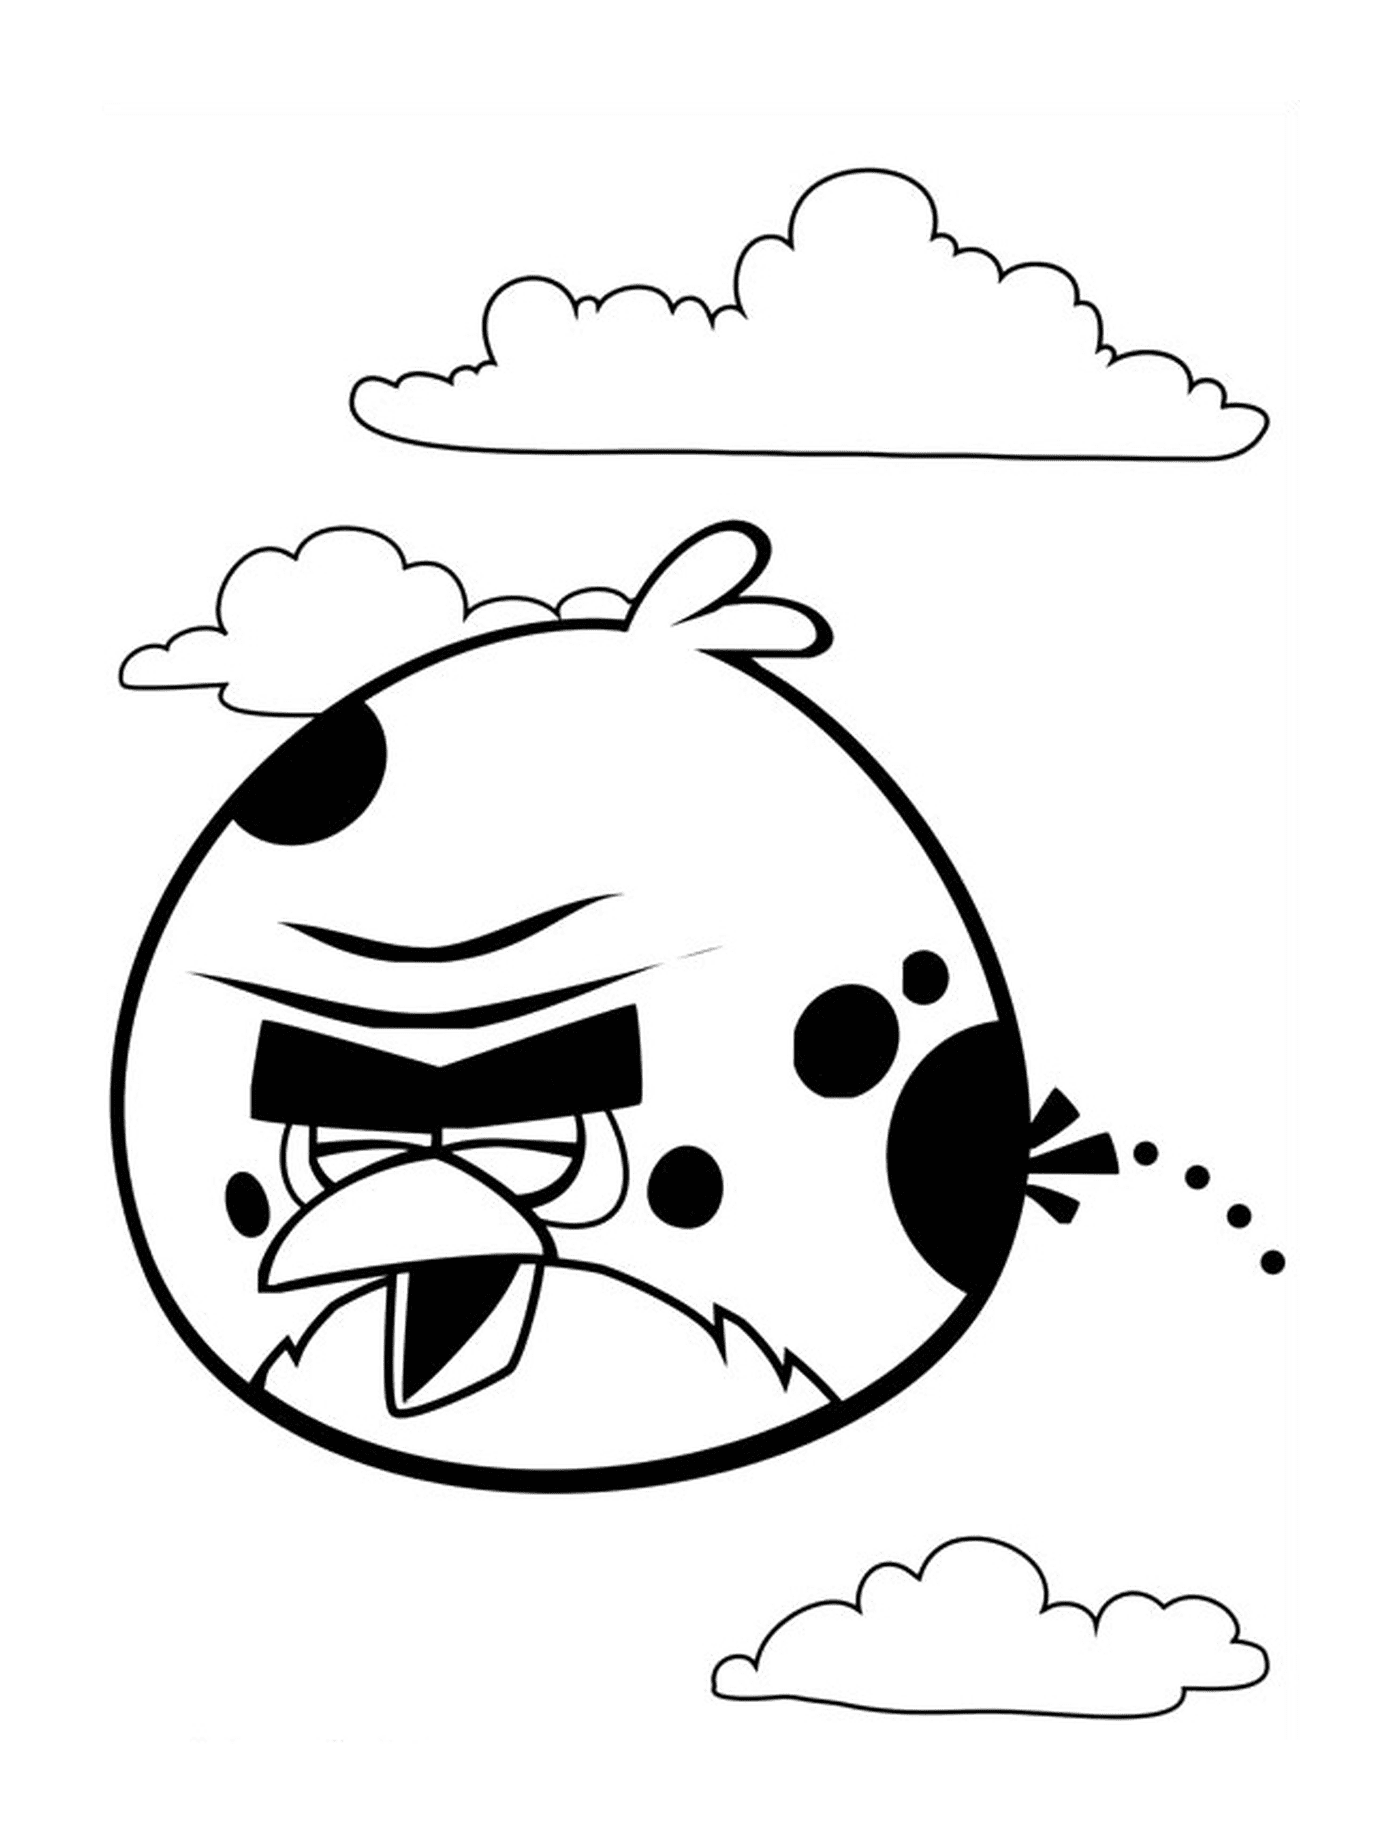  Angry Birds atenção vôo alto no ar 